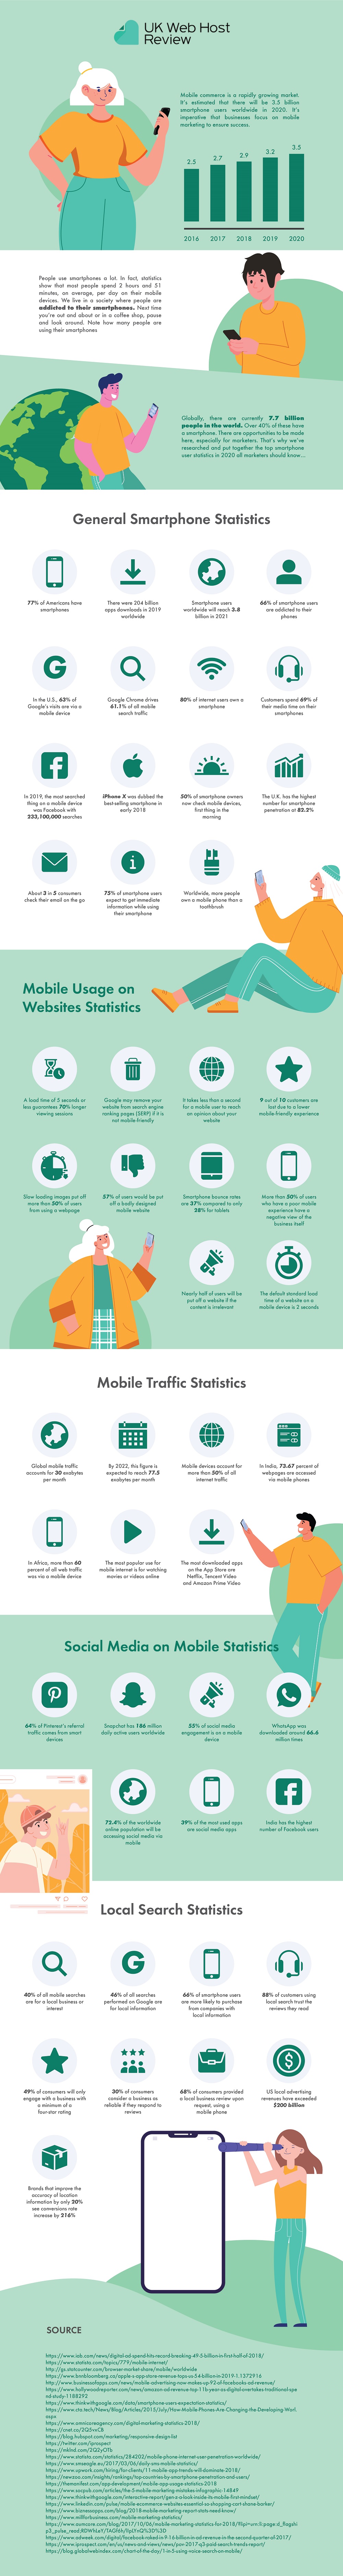 smartphone user statistics